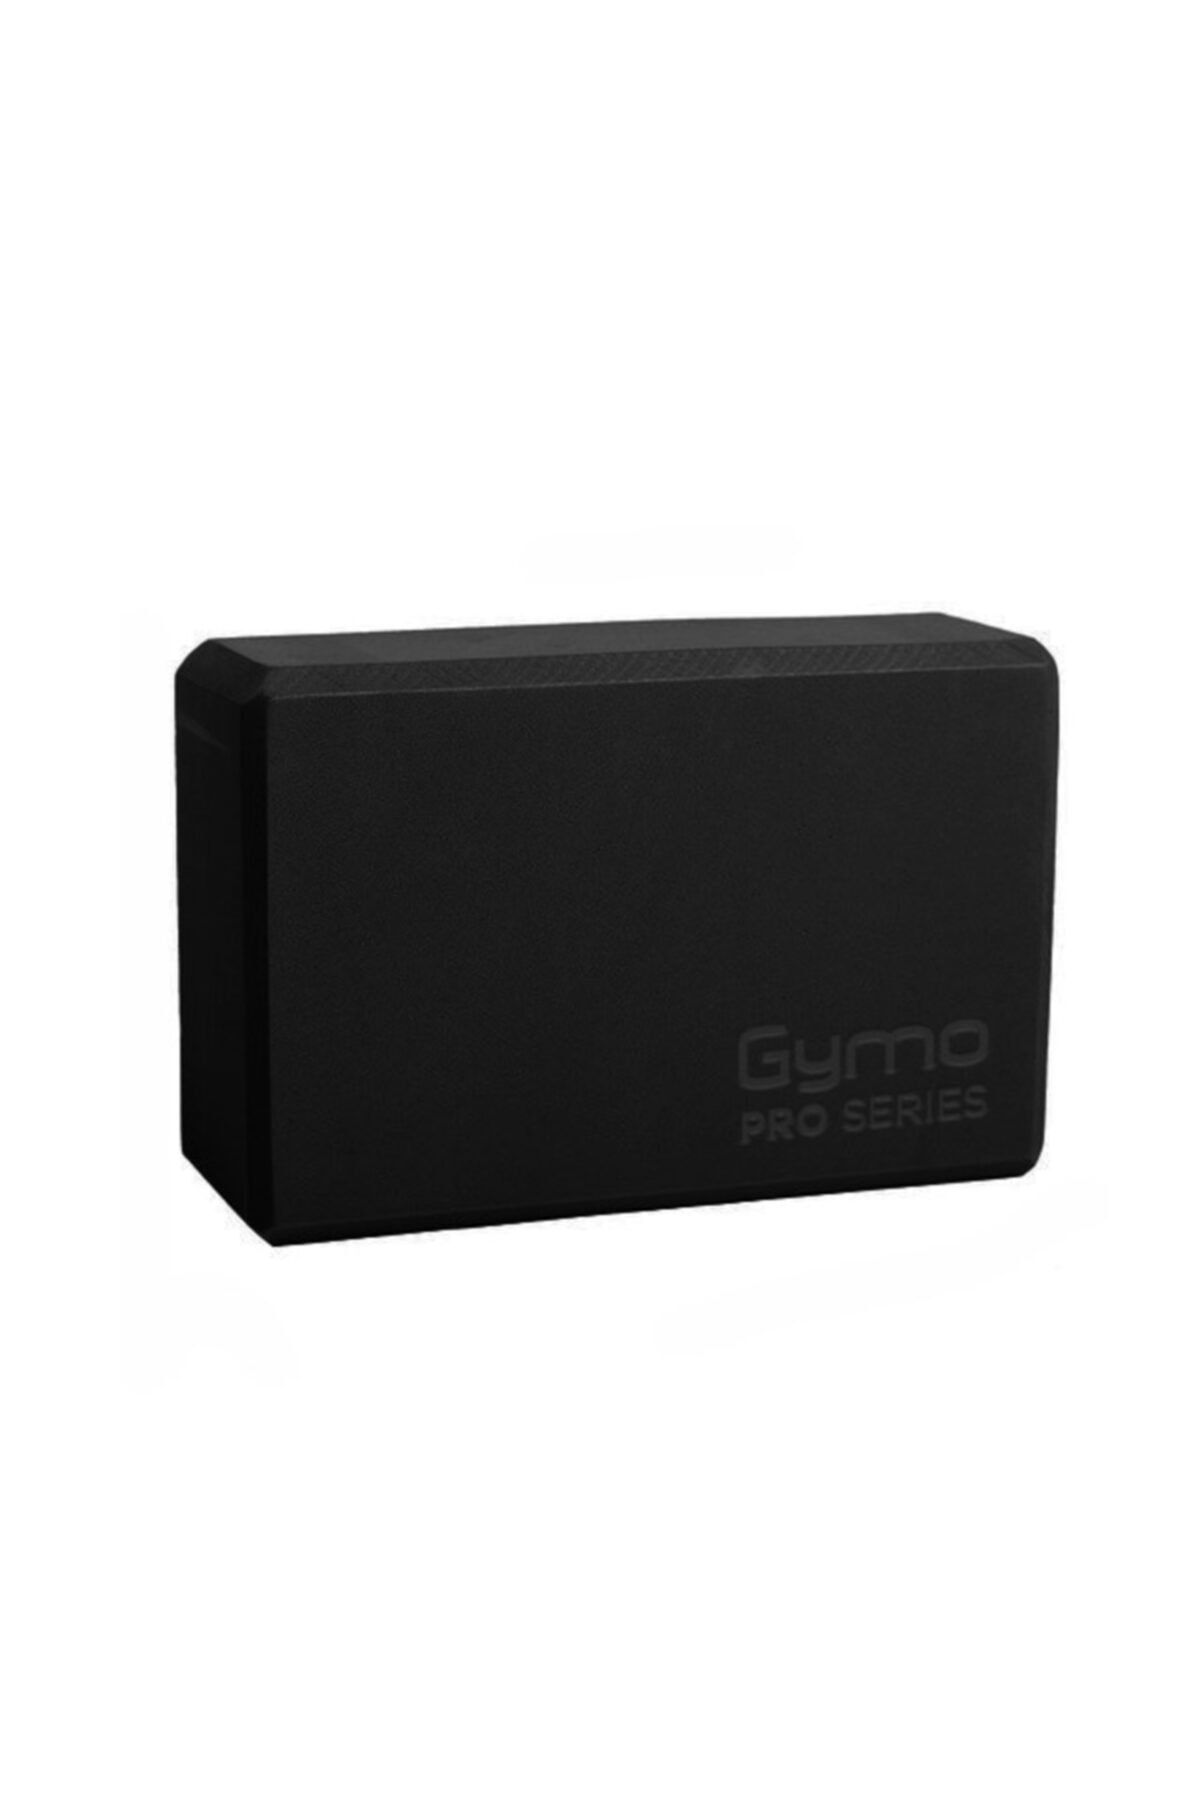 Gymo Pro Series Yoga Blok Siyah